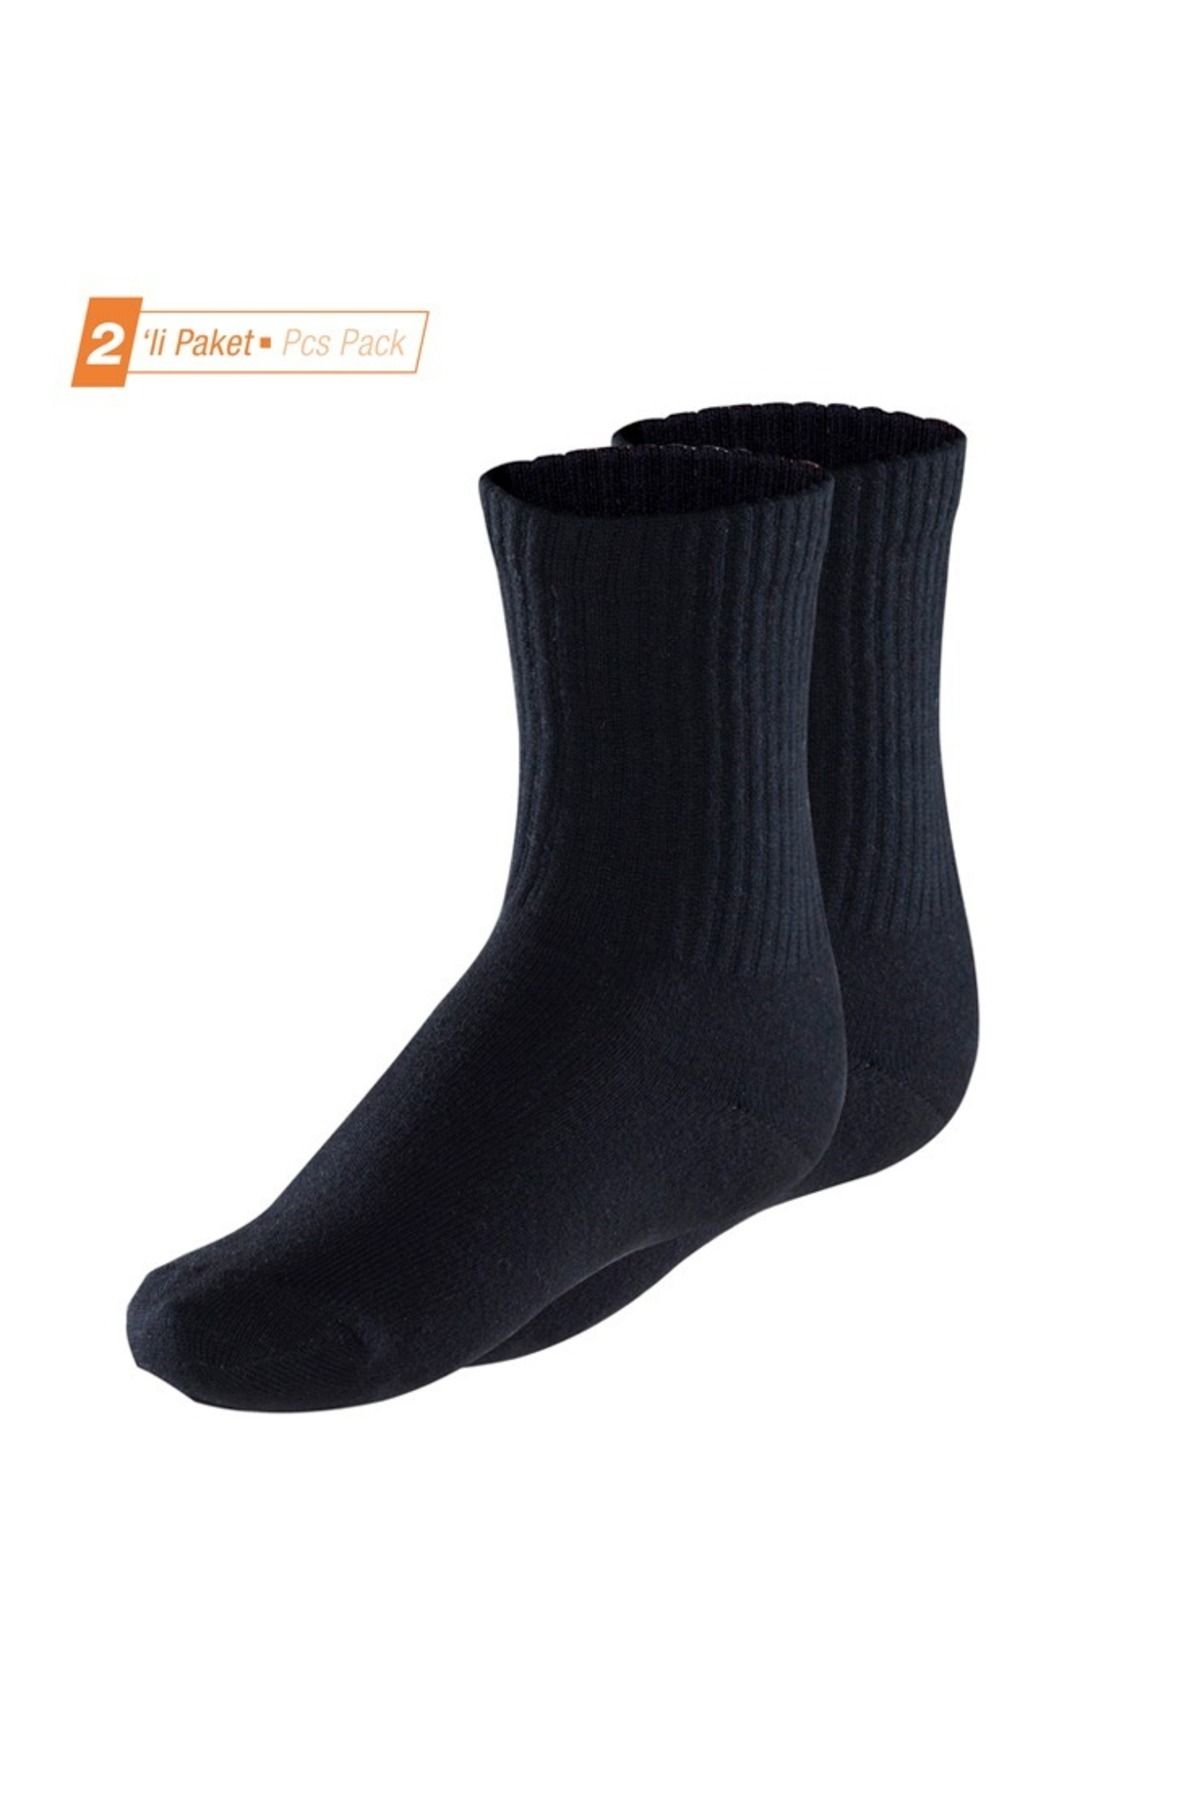 Blackspade Çocuk Termal Çorap 2. Seviye 2'li Paket 9995